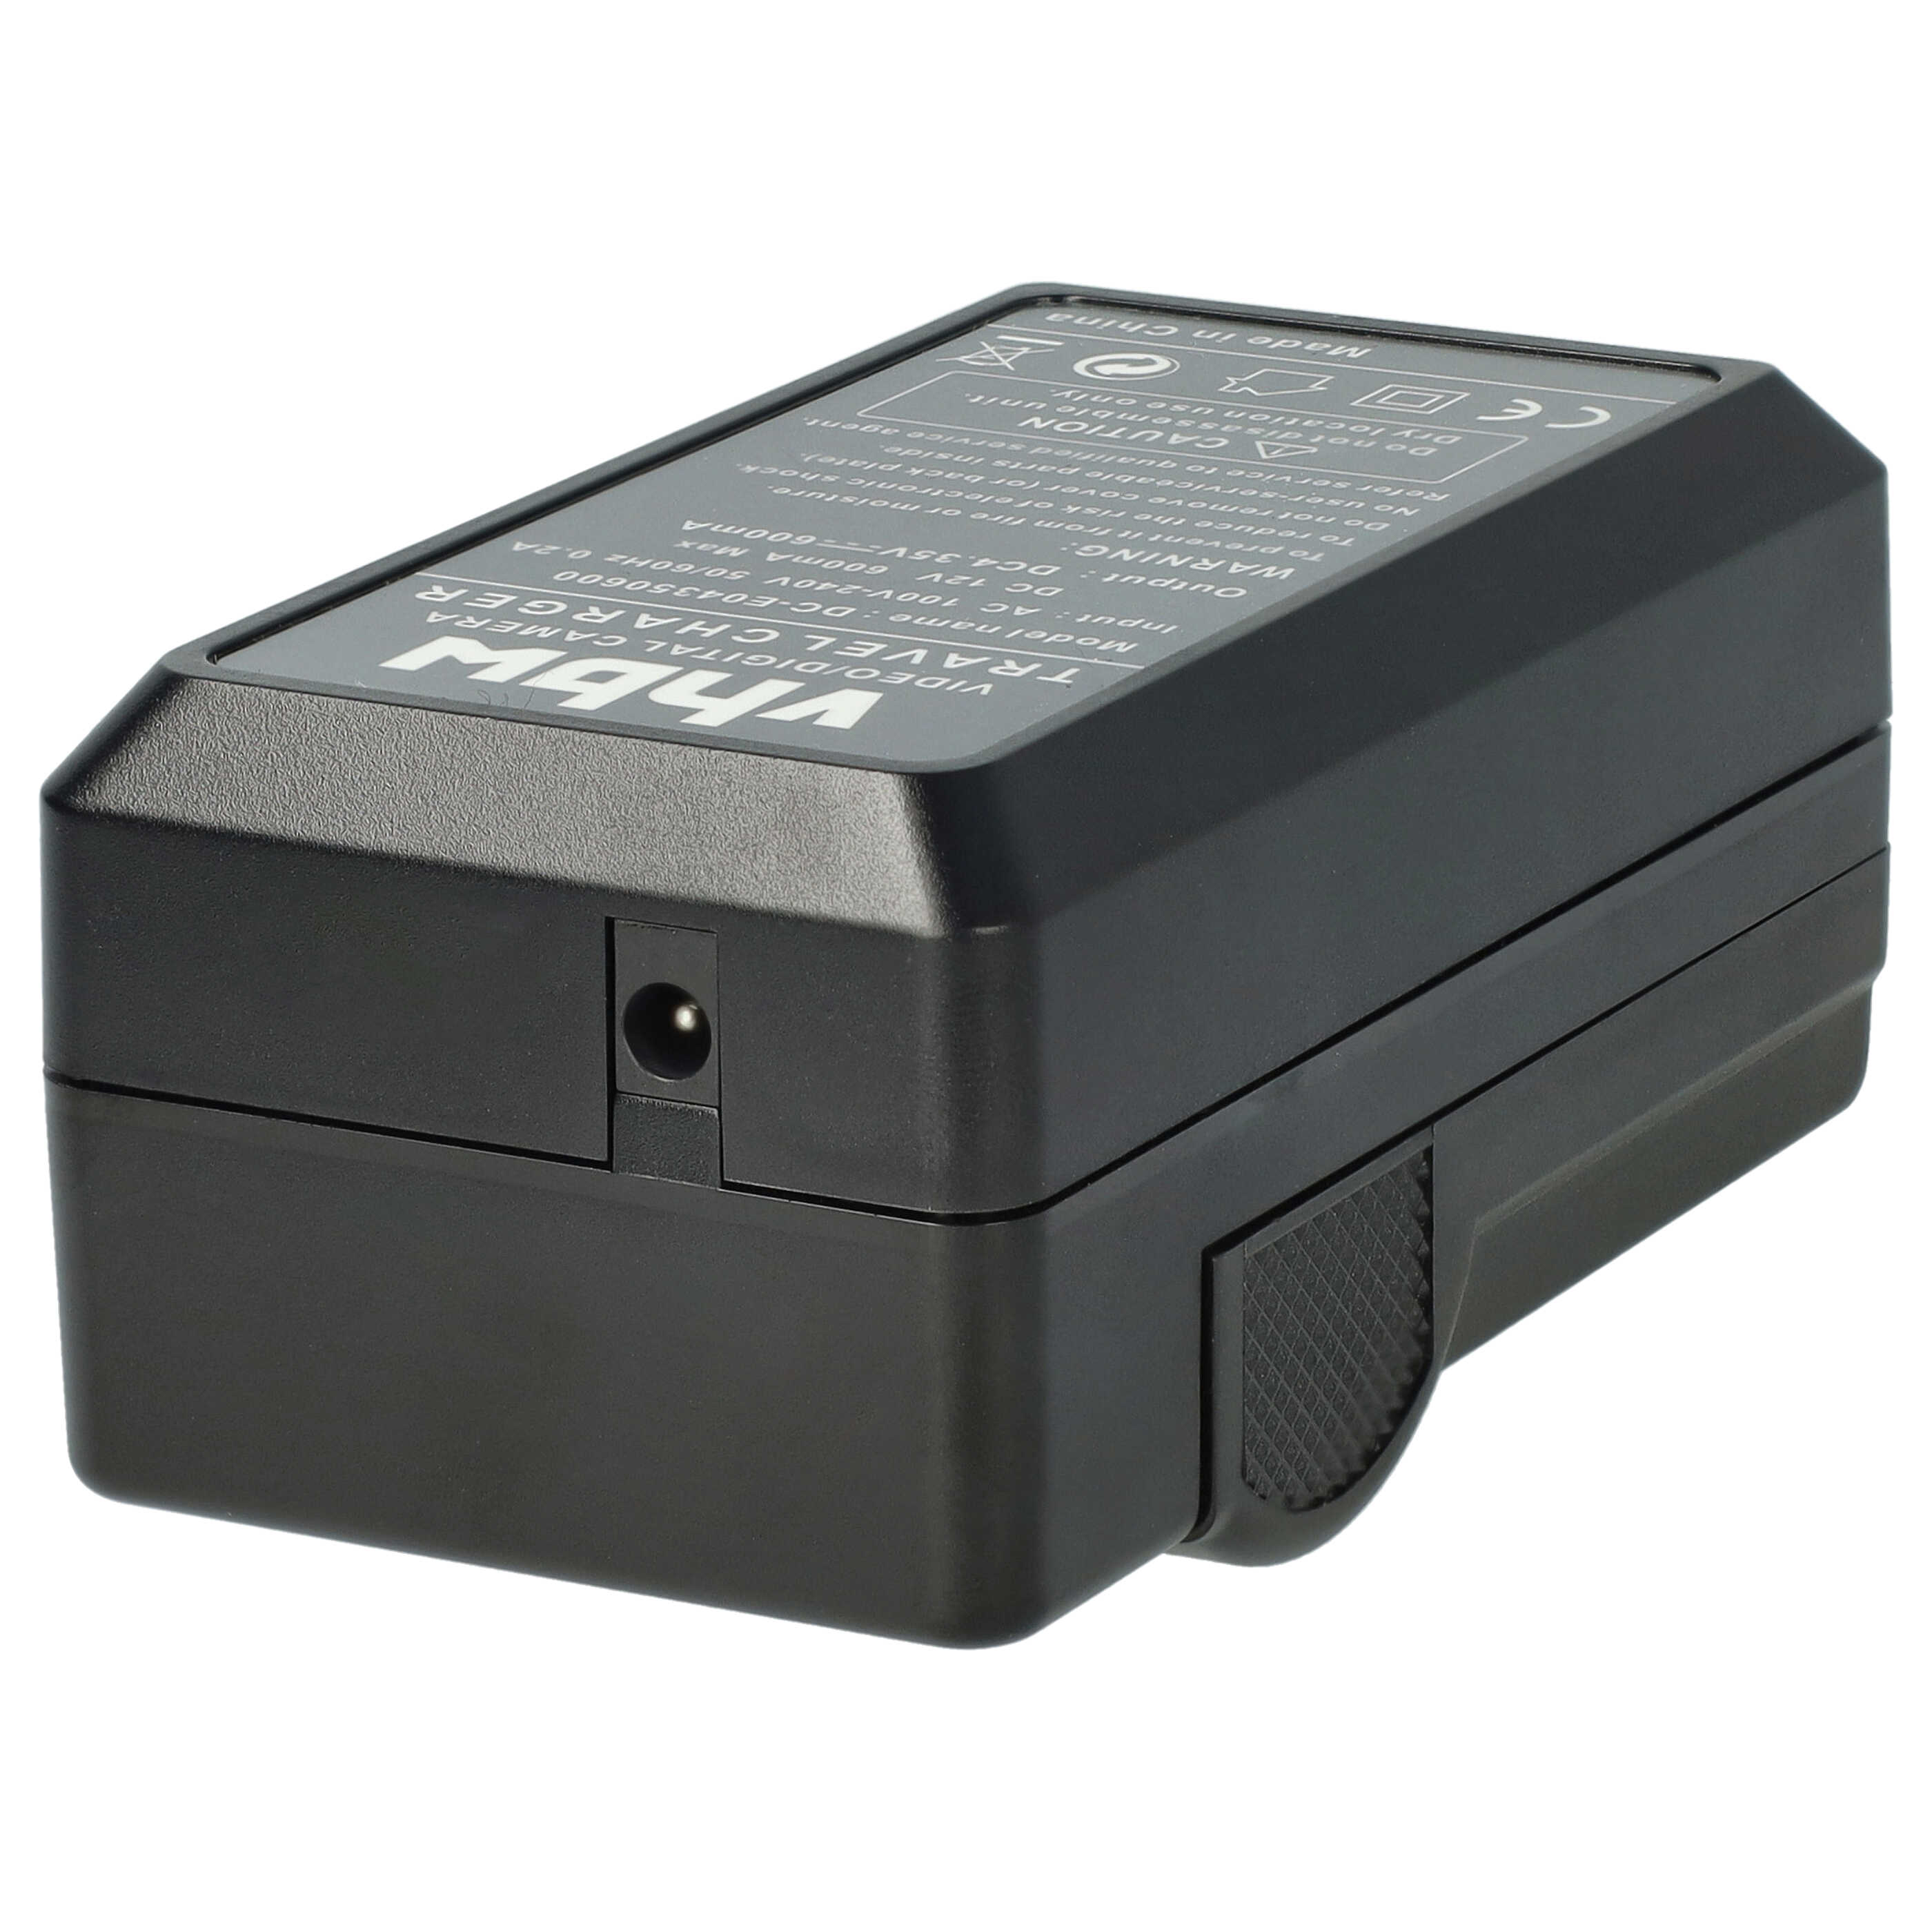 Akku Ladegerät passend für Coolpix P600 Kamera u.a. - 0,6 A, 4,35 V